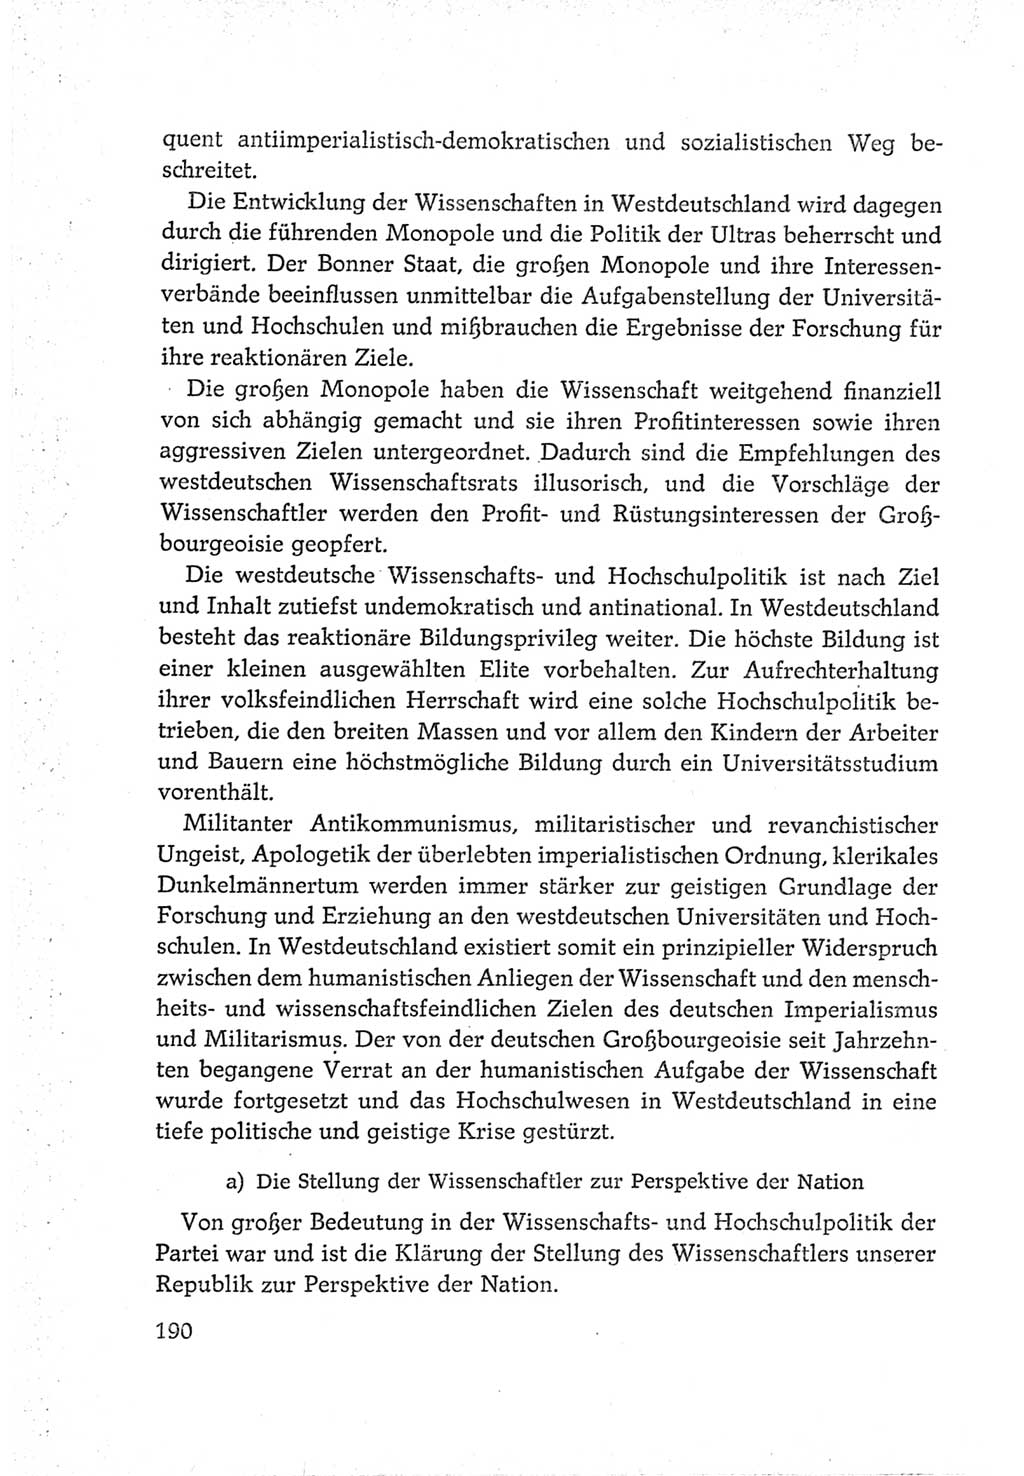 Protokoll der Verhandlungen des Ⅵ. Parteitages der Sozialistischen Einheitspartei Deutschlands (SED) [Deutsche Demokratische Republik (DDR)] 1963, Band Ⅳ, Seite 190 (Prot. Verh. Ⅵ. PT SED DDR 1963, Bd. Ⅳ, S. 190)